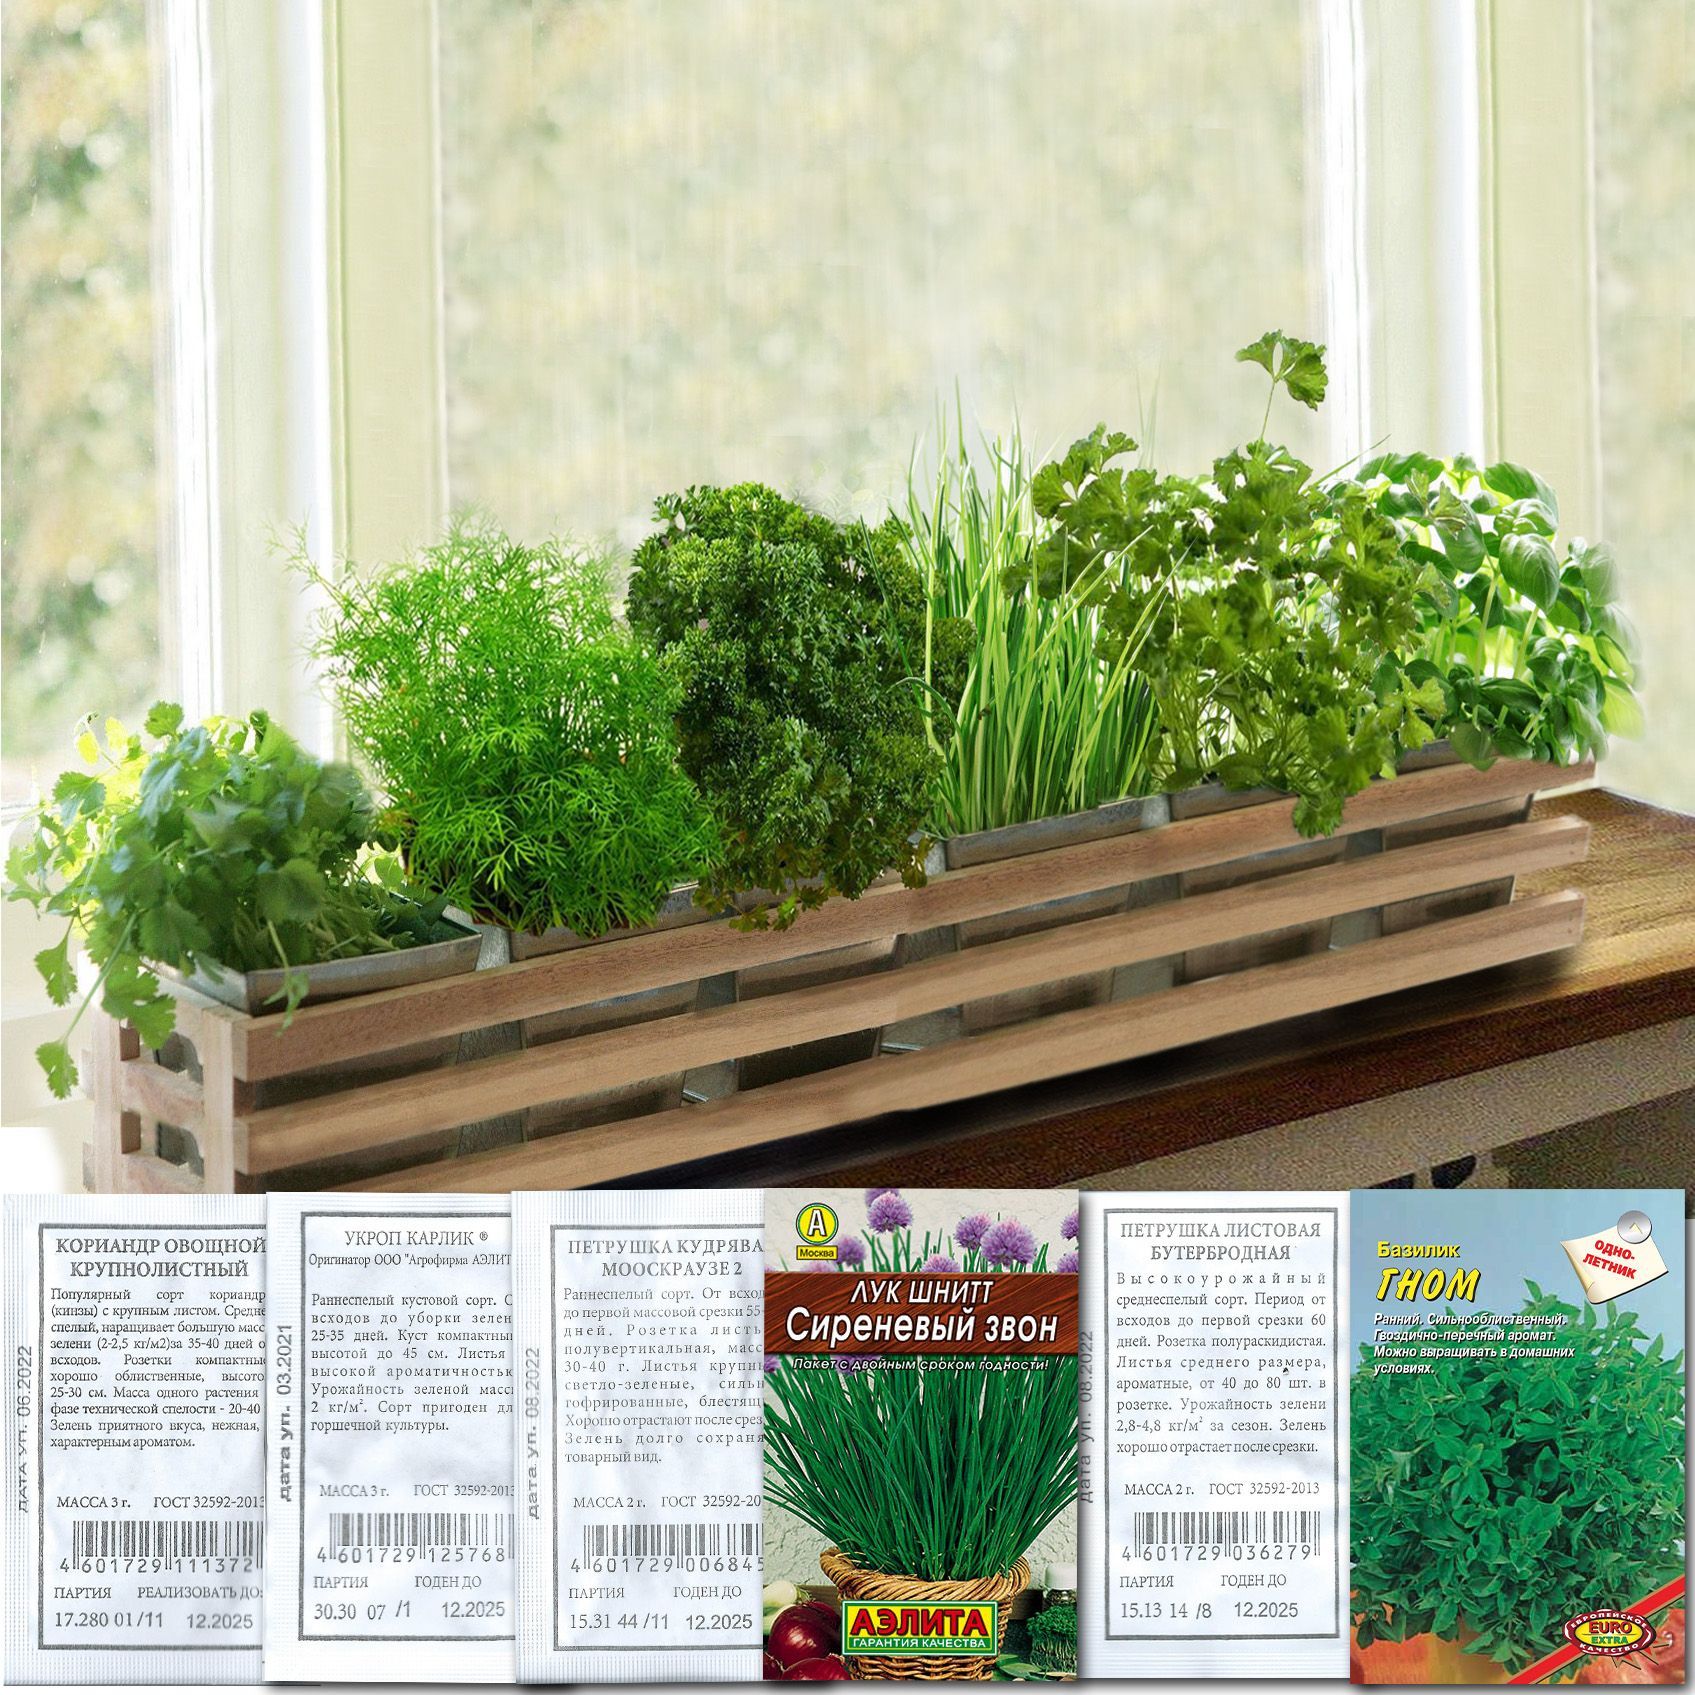 > Какие цветы и растения можно выращивать летом в балконных ящиках?